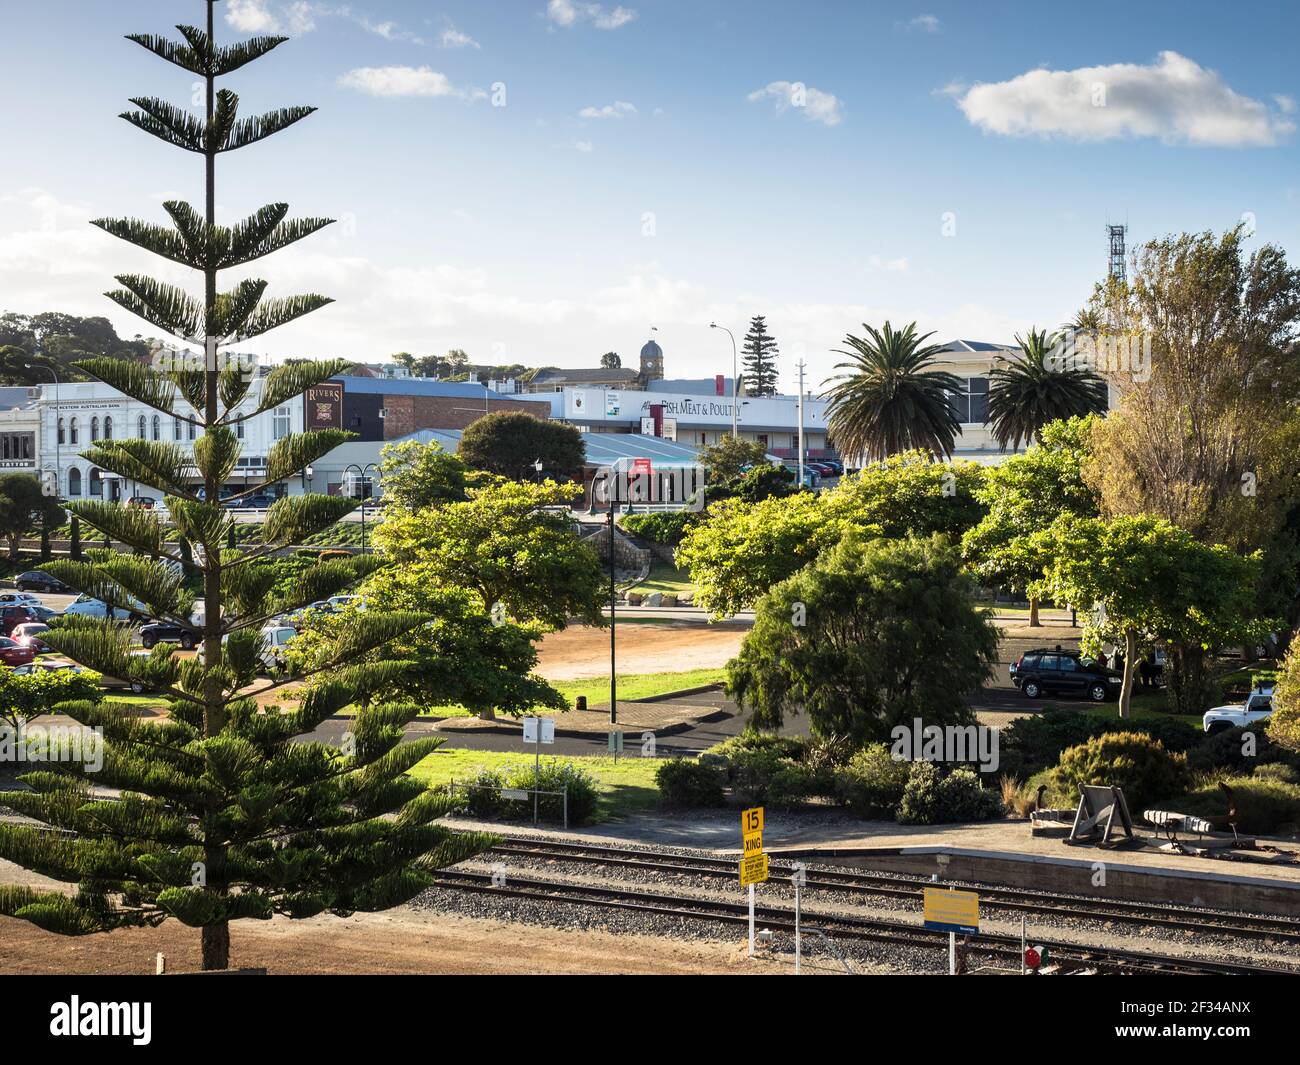 Ein Norfolk Island Pine Tree (Araucaria heterophylla) flankiert den Blick nach Norden, vorbei an Albanys Bahnhof zur Stirling Terrace. Stockfoto